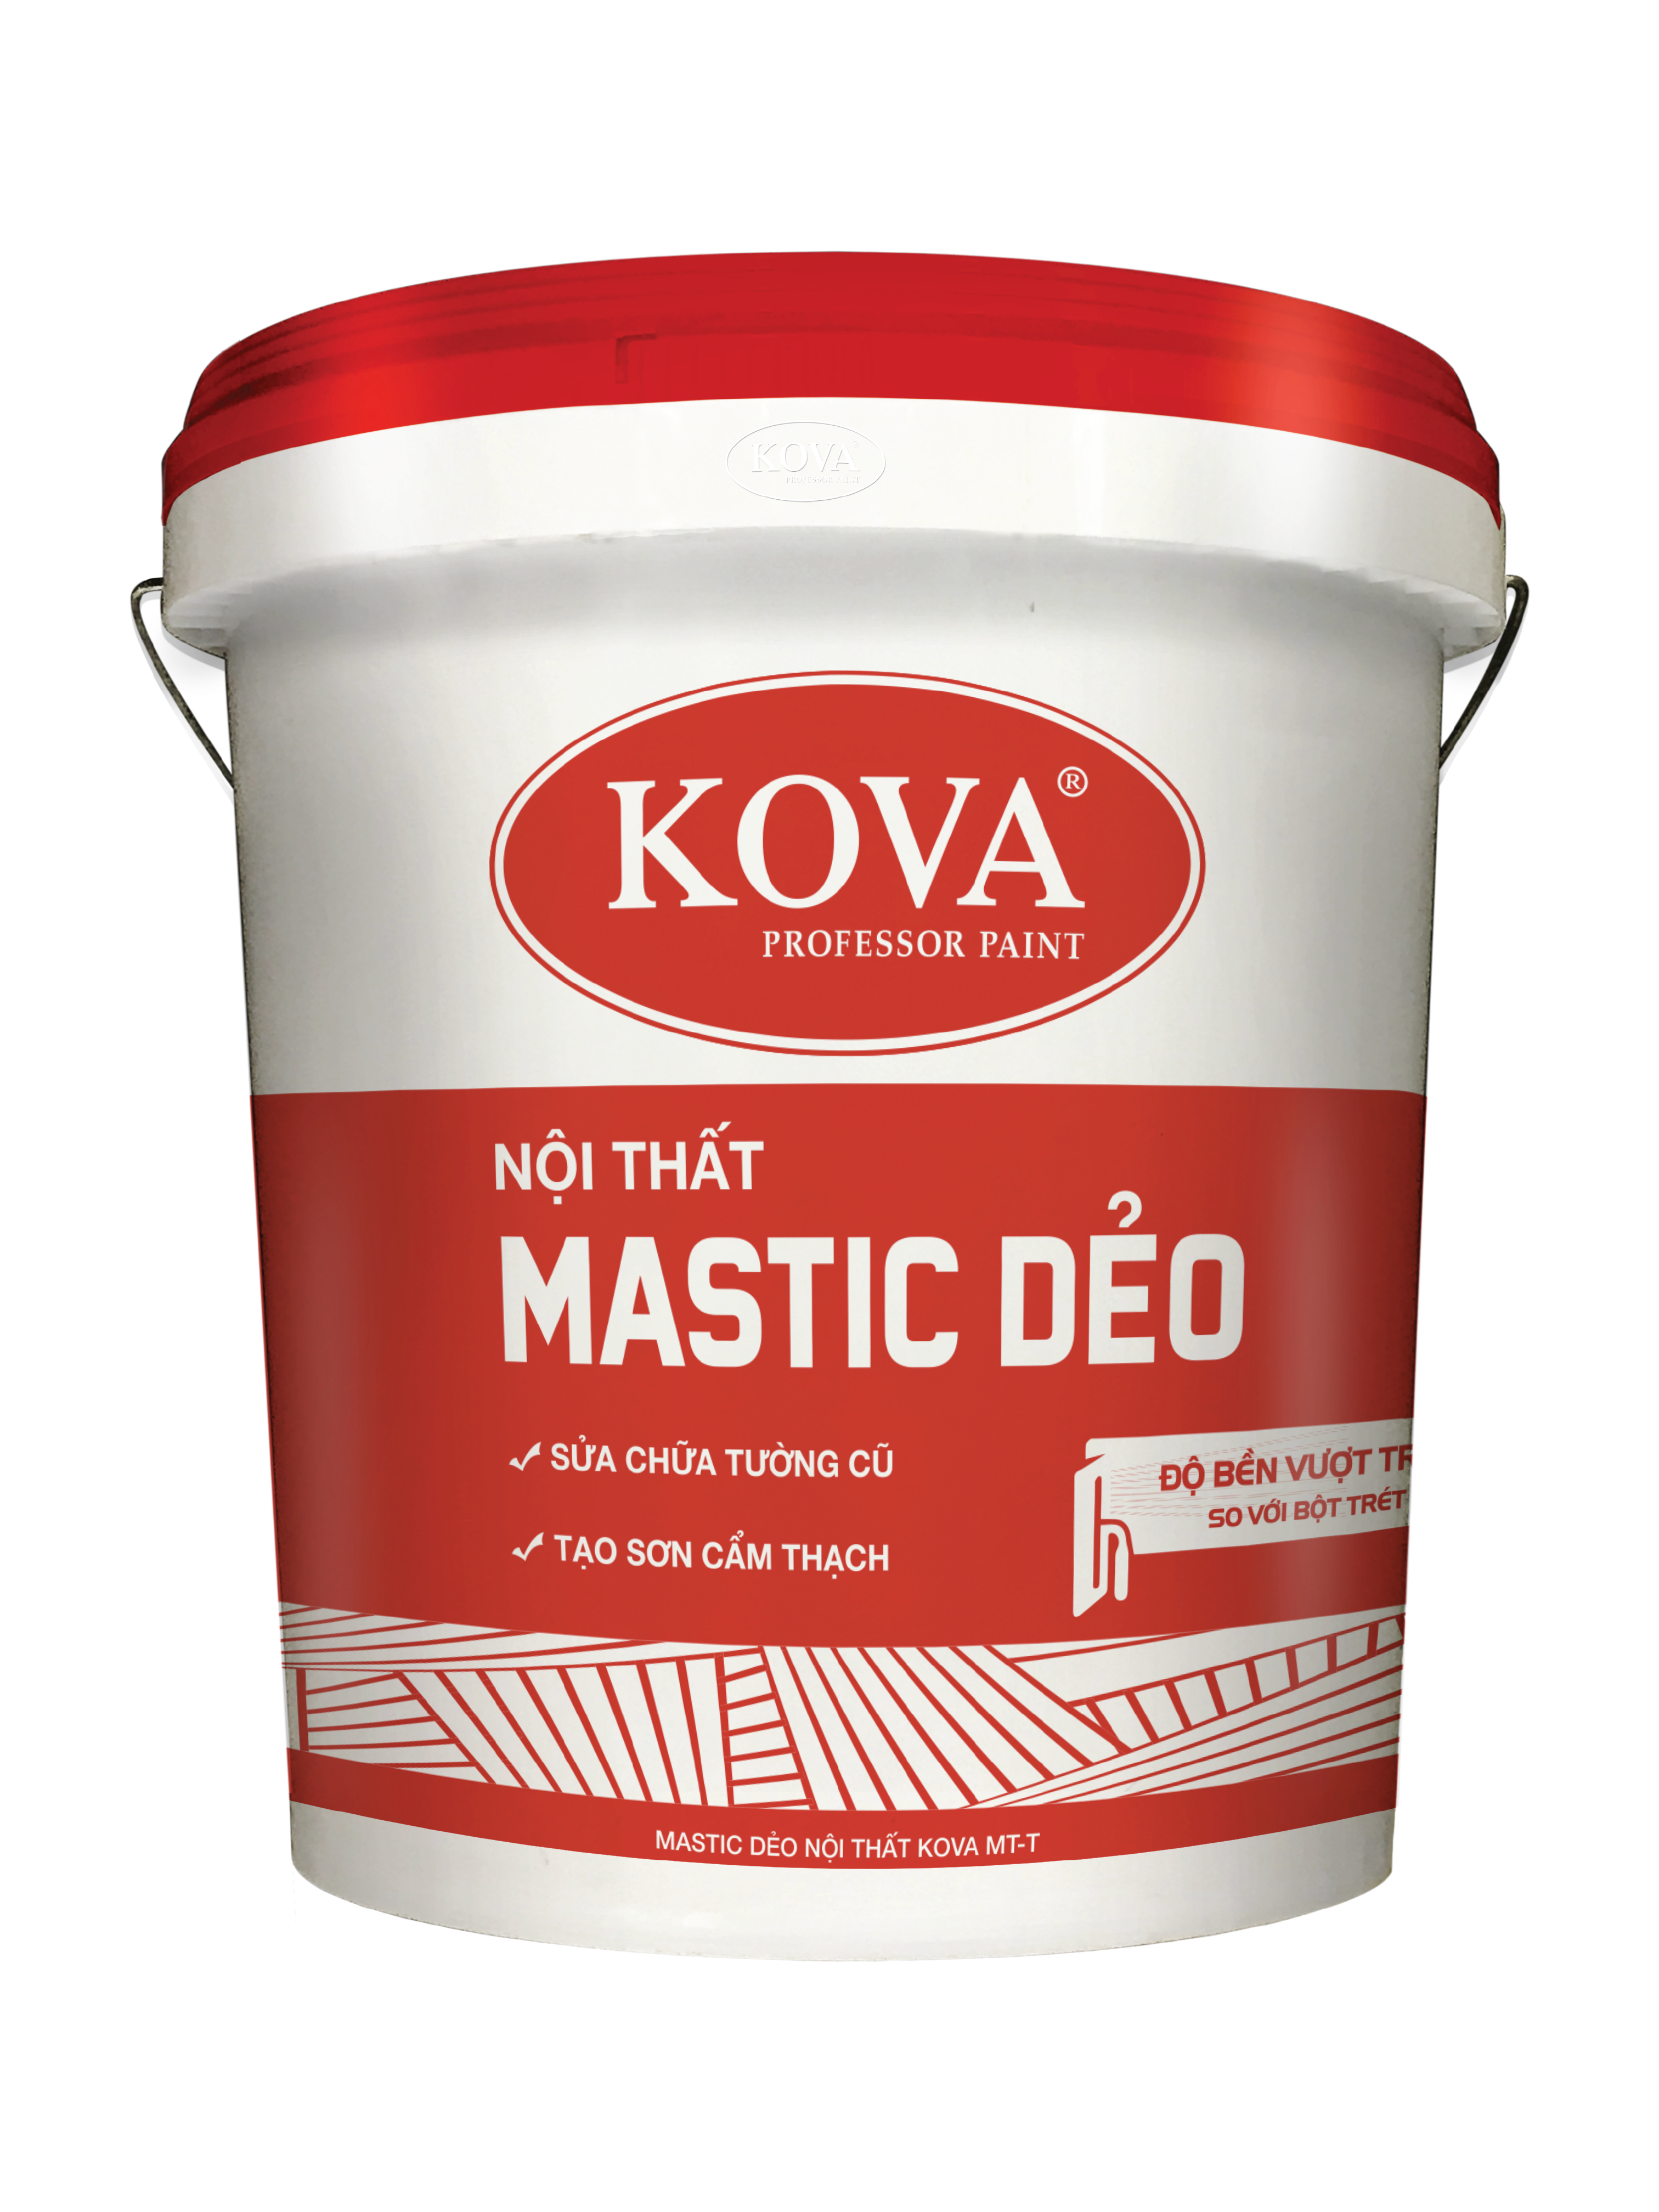 Sơn KOVA: Sơn KOVA là thương hiệu sơn chất lượng cao, mang lại cho bạn sự tin tưởng và bảo vệ tối đa cho tường nhà của bạn. Đặc biệt, với nhiều màu sắc và độ bền cao, sơn KOVA sẽ làm cho ngôi nhà của bạn trở nên đẹp hơn bao giờ hết.